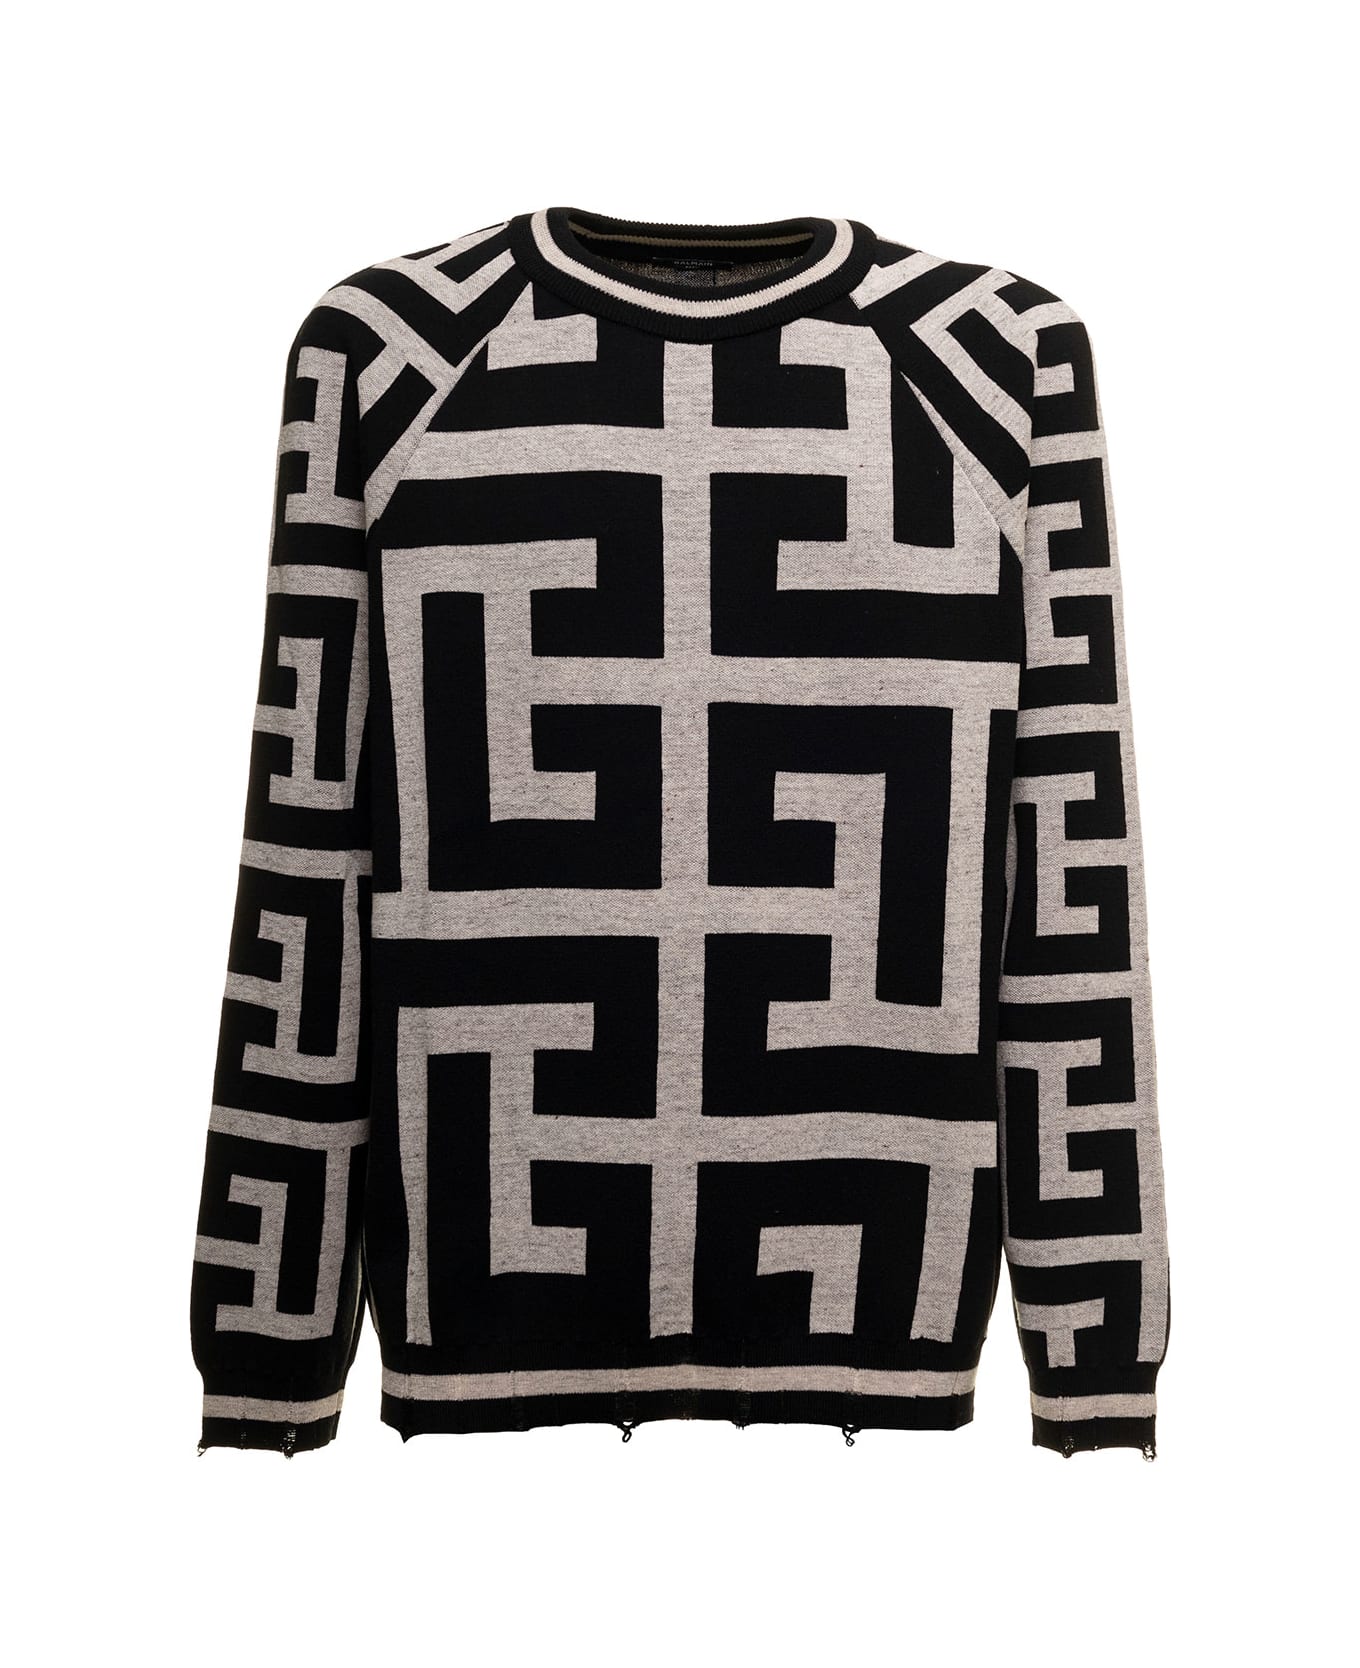 Balmain Monogram Merino Wool And Linen White And Black Sweater Balmain Man - Black